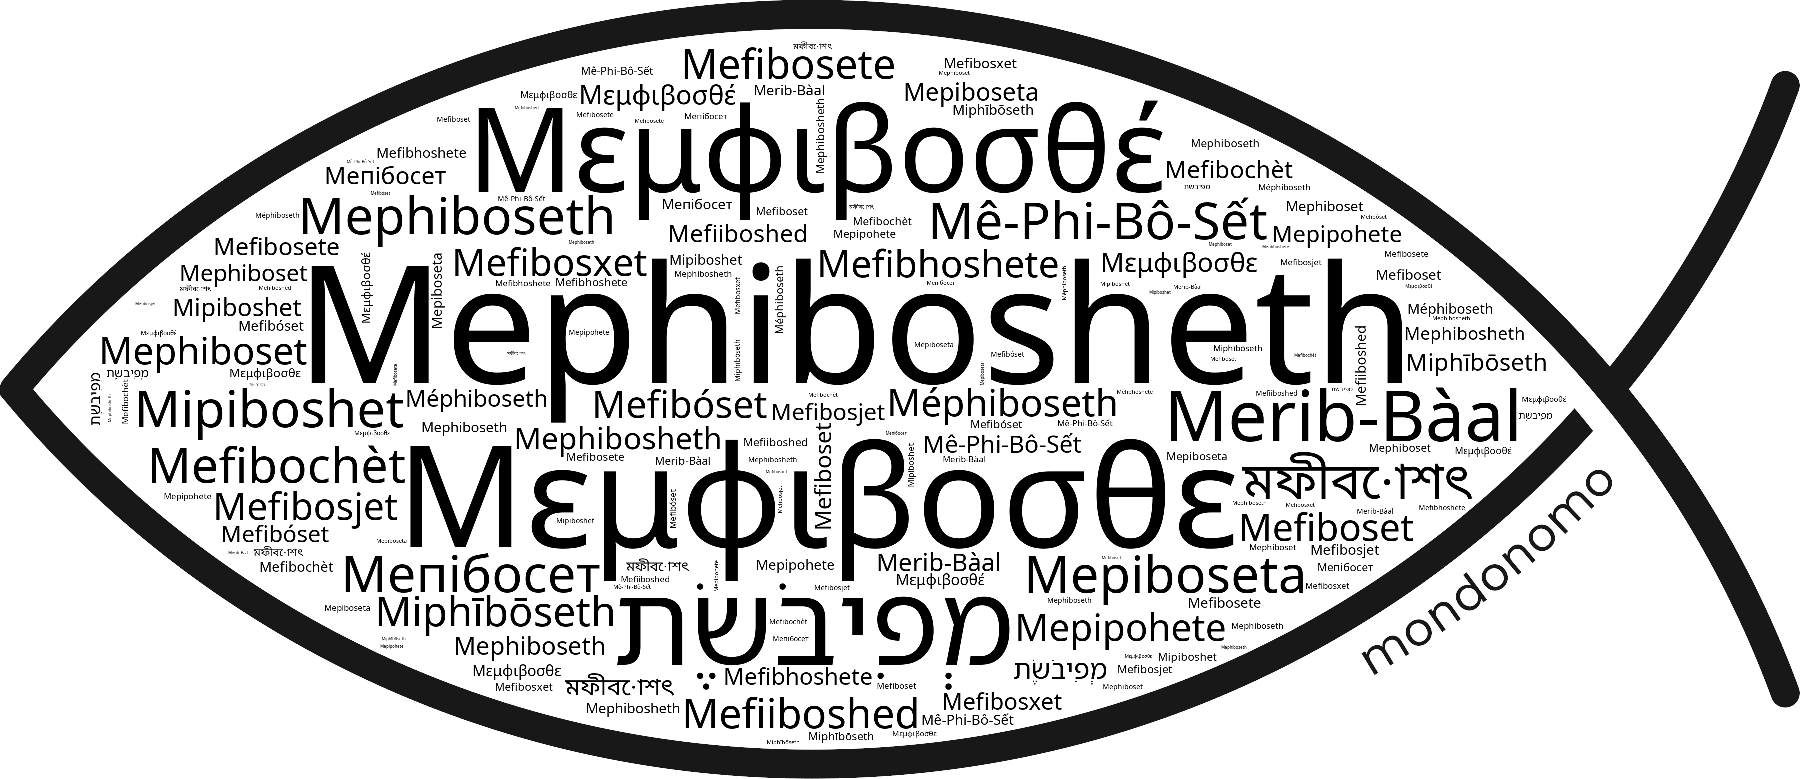 Name Mephibosheth in the world's Bibles